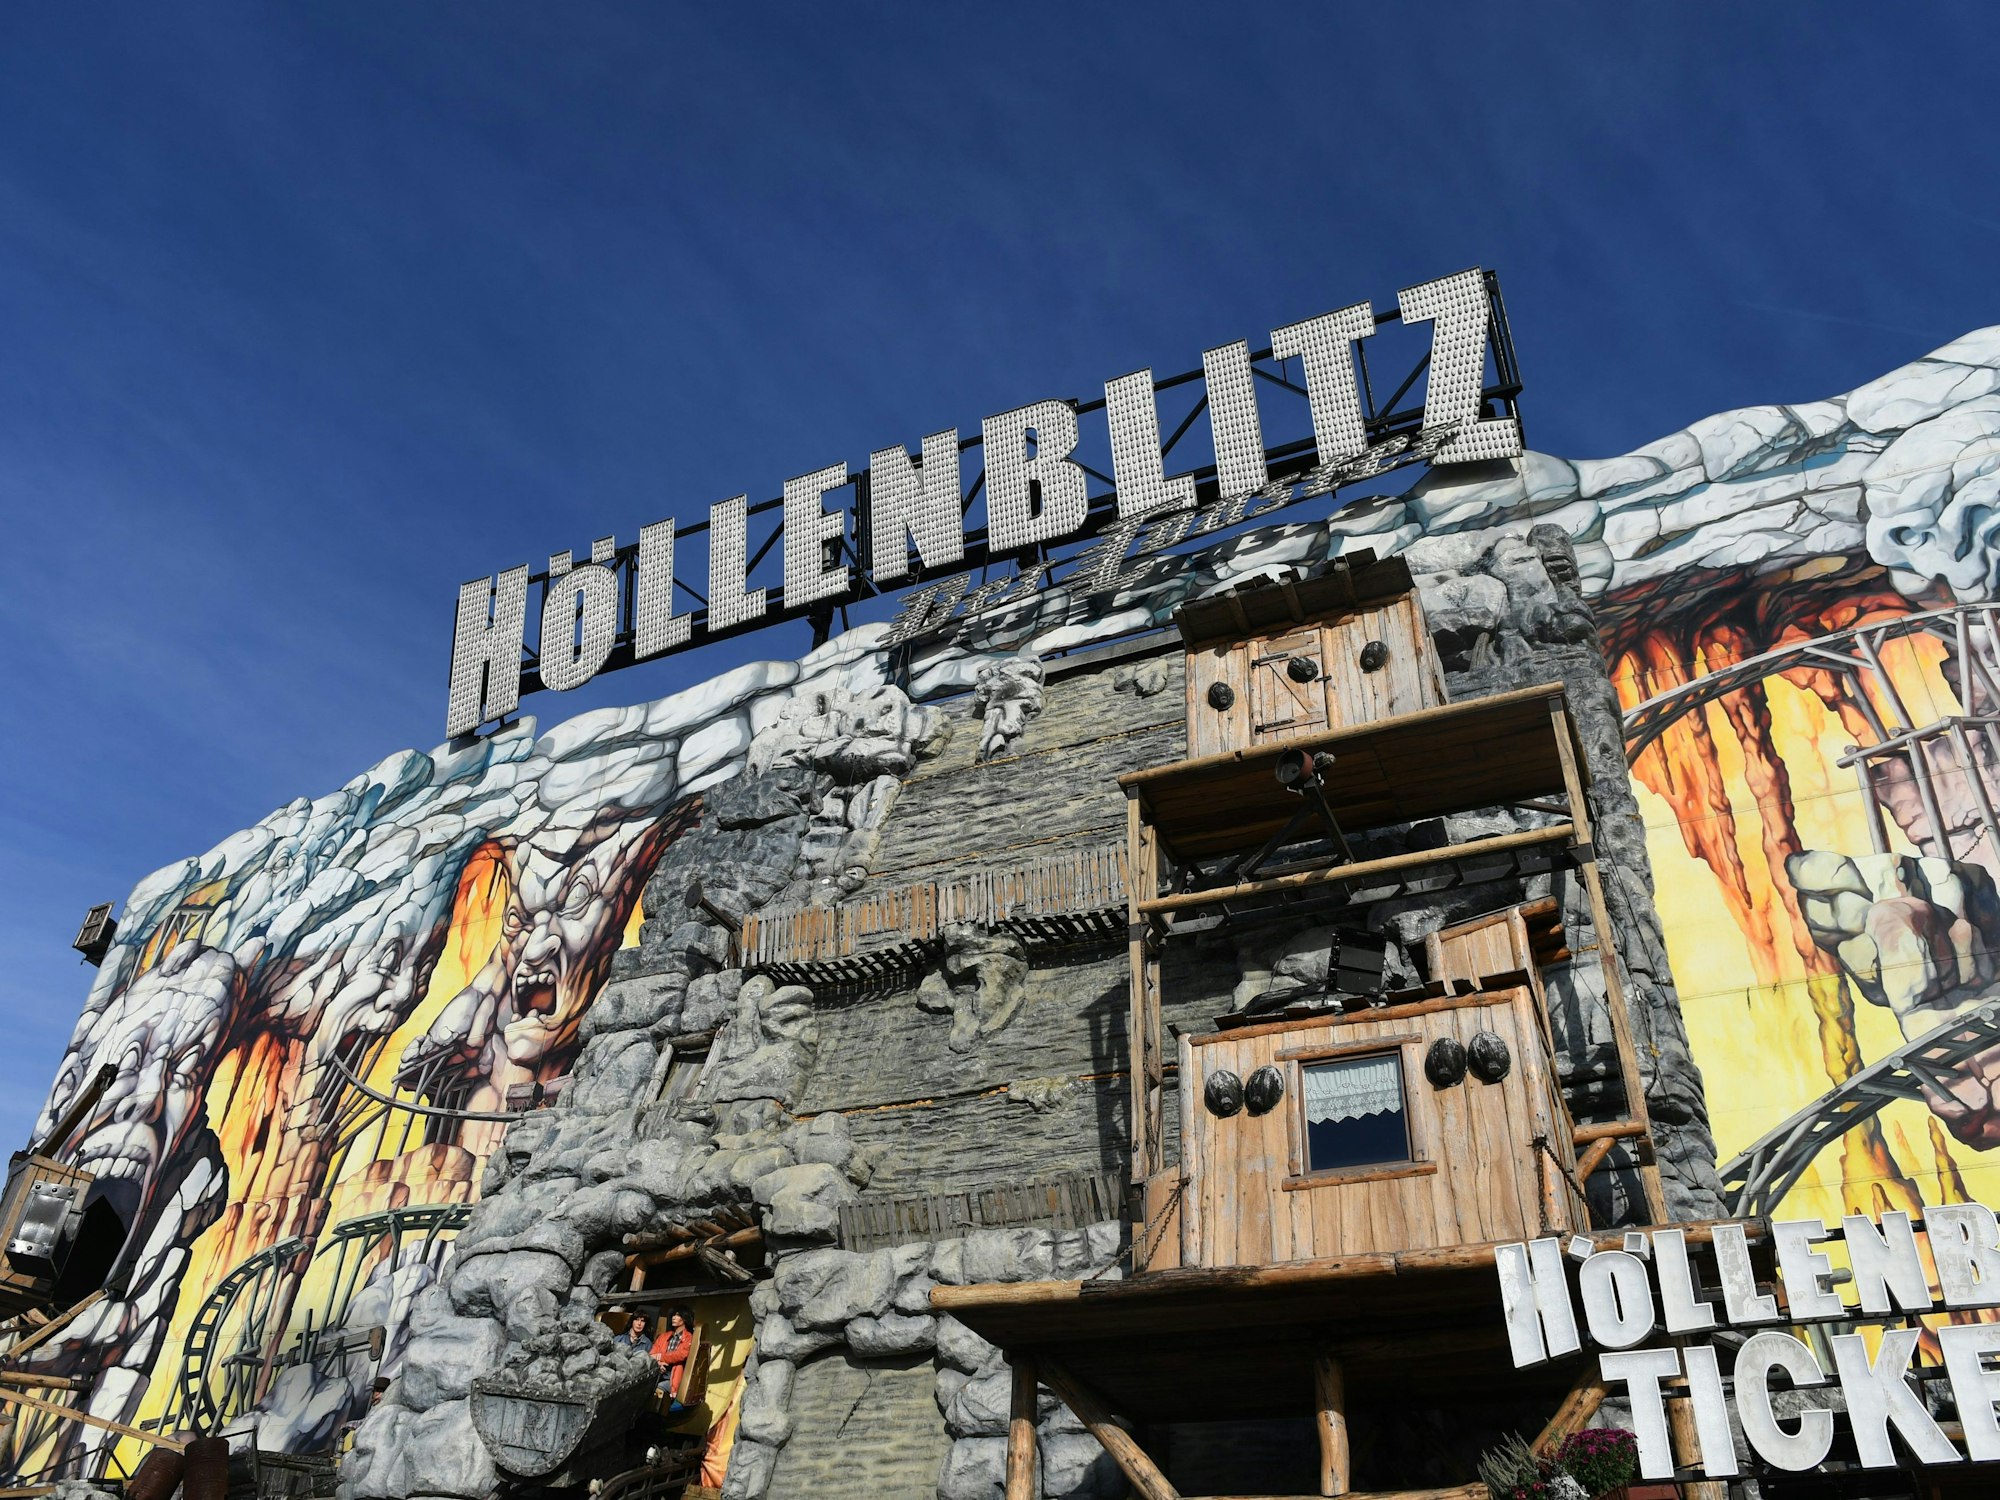 Blauer Himmel strahlt über dem Fahrgeschäft „Höllenblitz“ auf dem Münchner Oktoberfest.